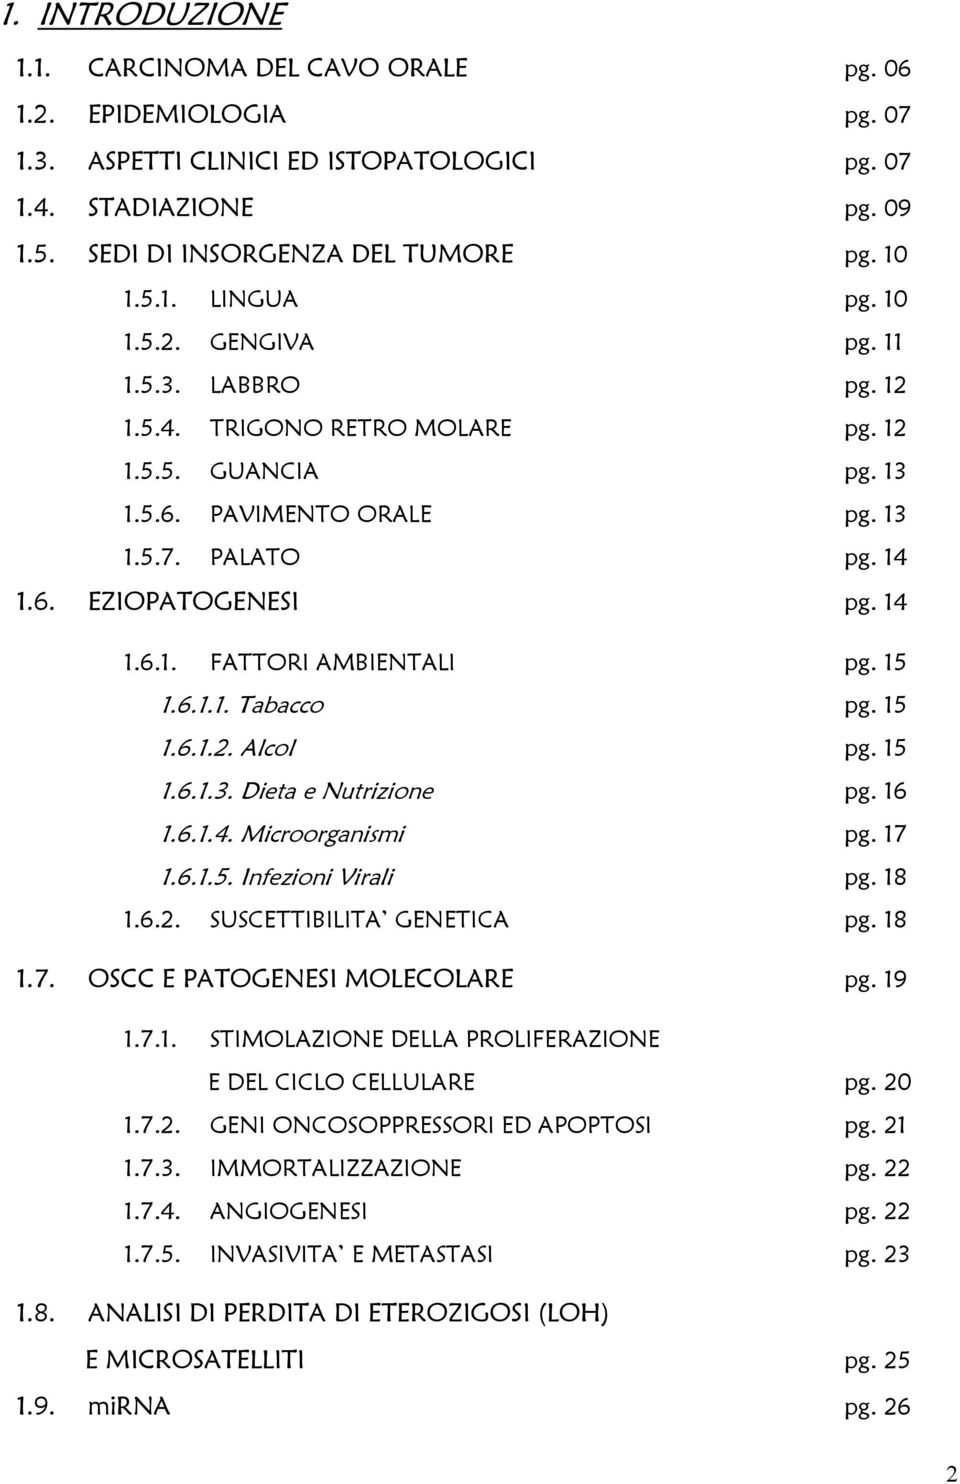 15 1.6.1.1. Tabacco pg. 15 1.6.1.2. Alcol pg. 15 1.6.1.3. Dieta e Nutrizione pg. 16 1.6.1.4. Microorganismi pg. 17 1.6.1.5. Infezioni Virali pg. 18 1.6.2. SUSCETTIBILITA GENETICA pg. 18 1.7. OSCC E PATOGENESI MOLECOLARE pg.